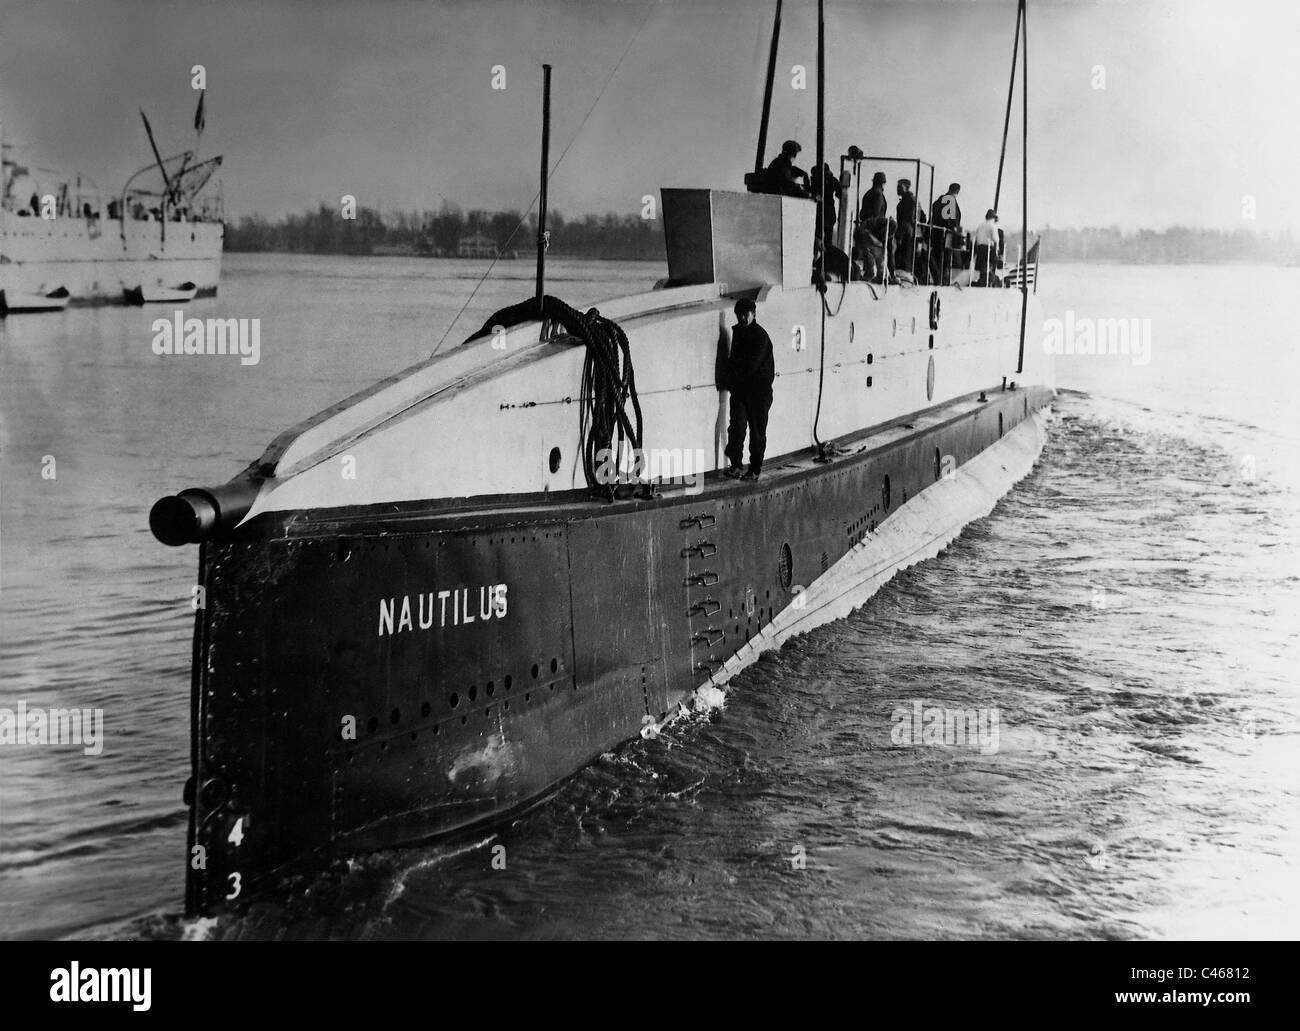 https://c8.alamy.com/comp/C46812/submarine-nautilus-1931-C46812.jpg